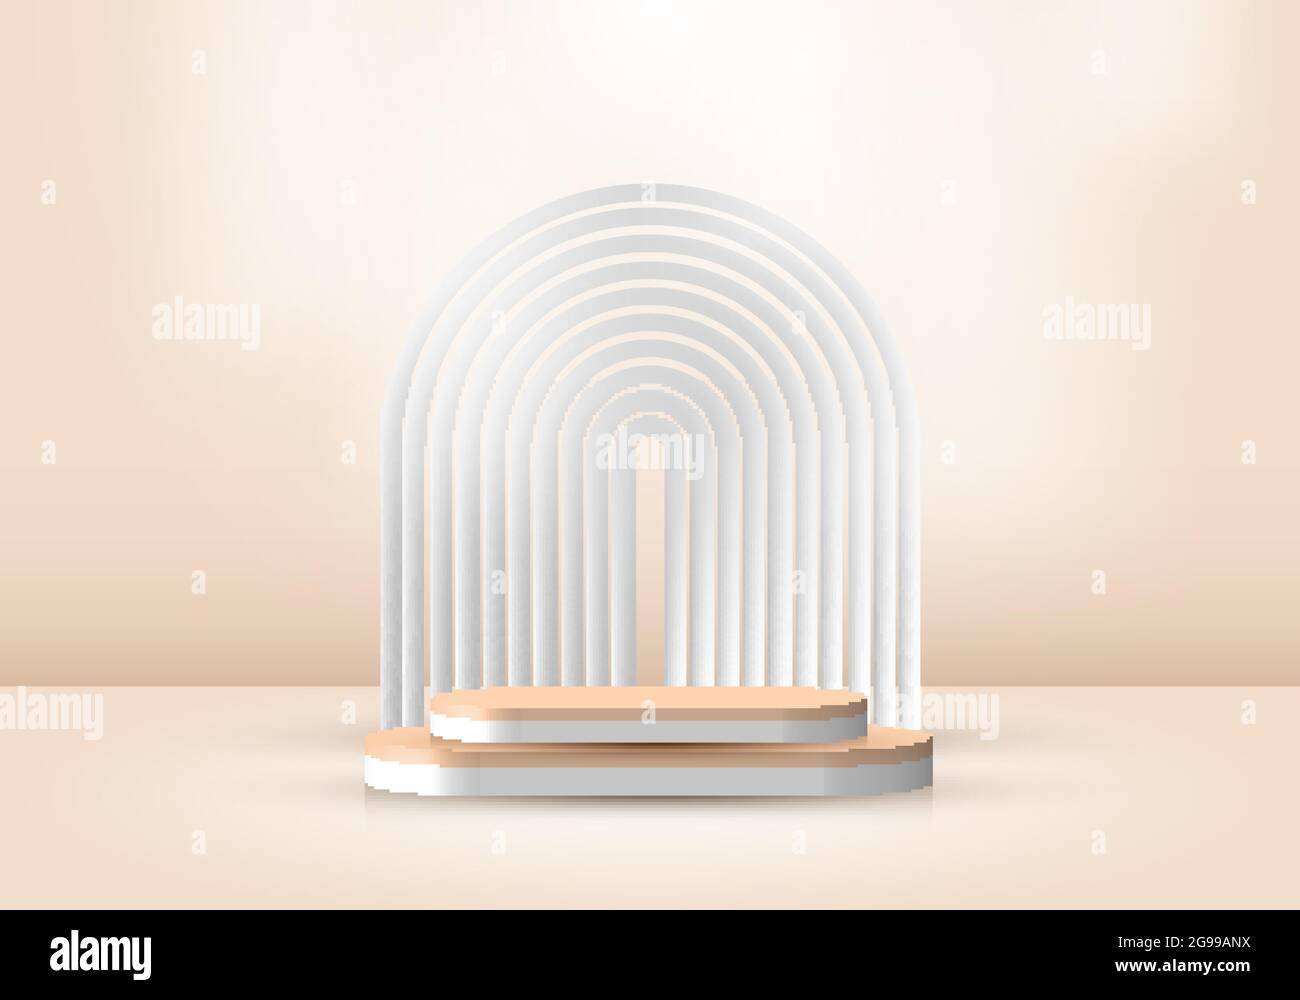 3D réaliste résumé scène minimale vide beige couleur podium salle de studio avec lignes arrondies toile de fond et éclairage doux marron fond. Conception pour pr Illustration de Vecteur